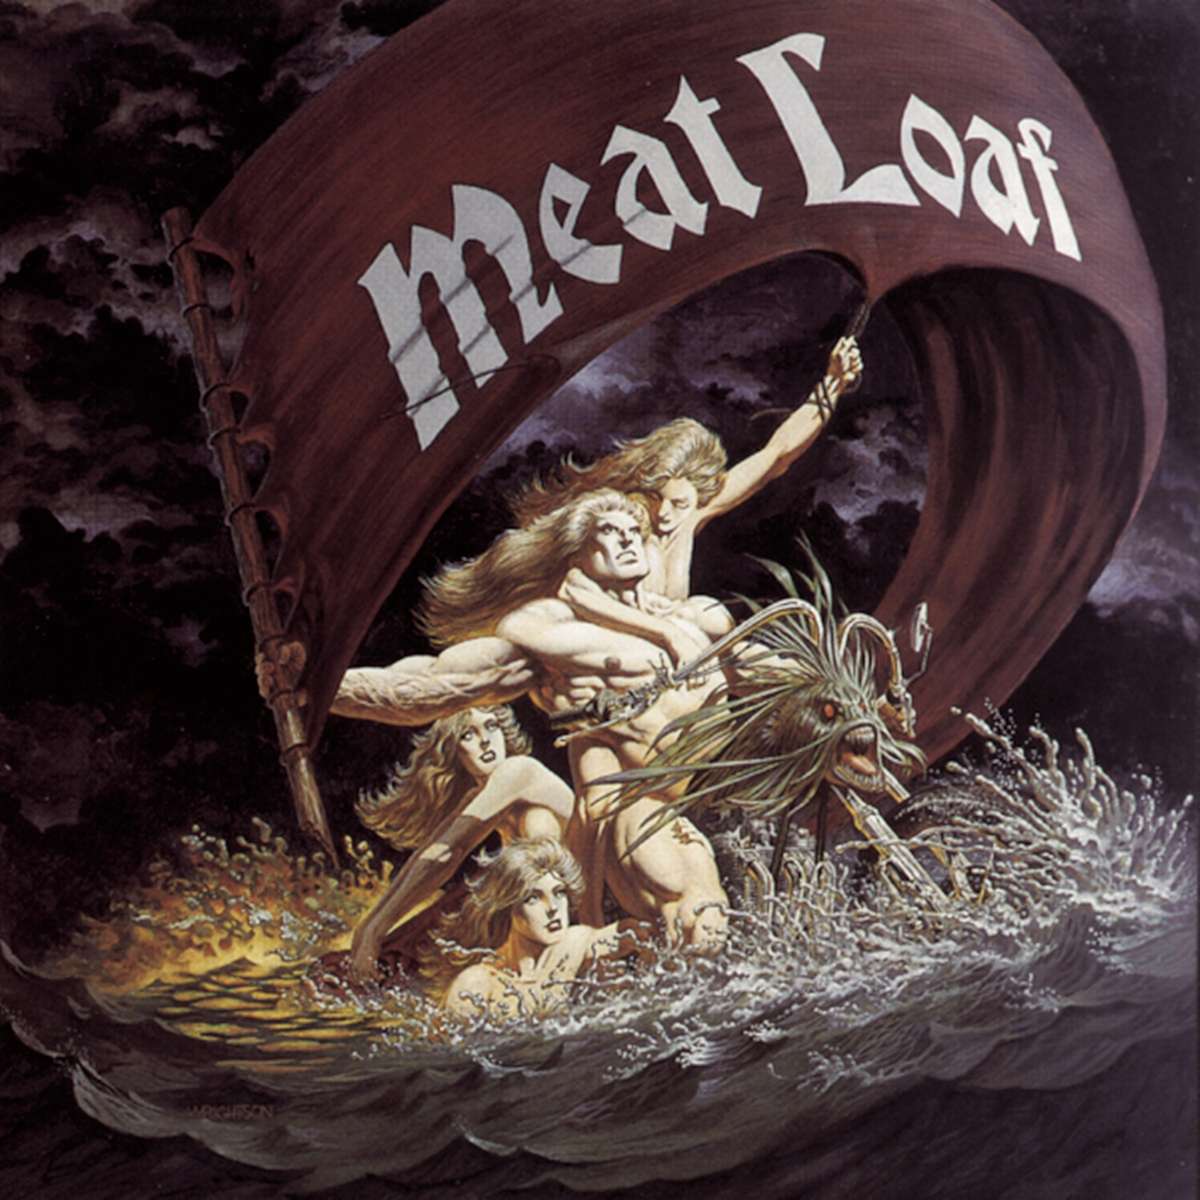 Meat Loaf - Dead Ringer - 33RPM